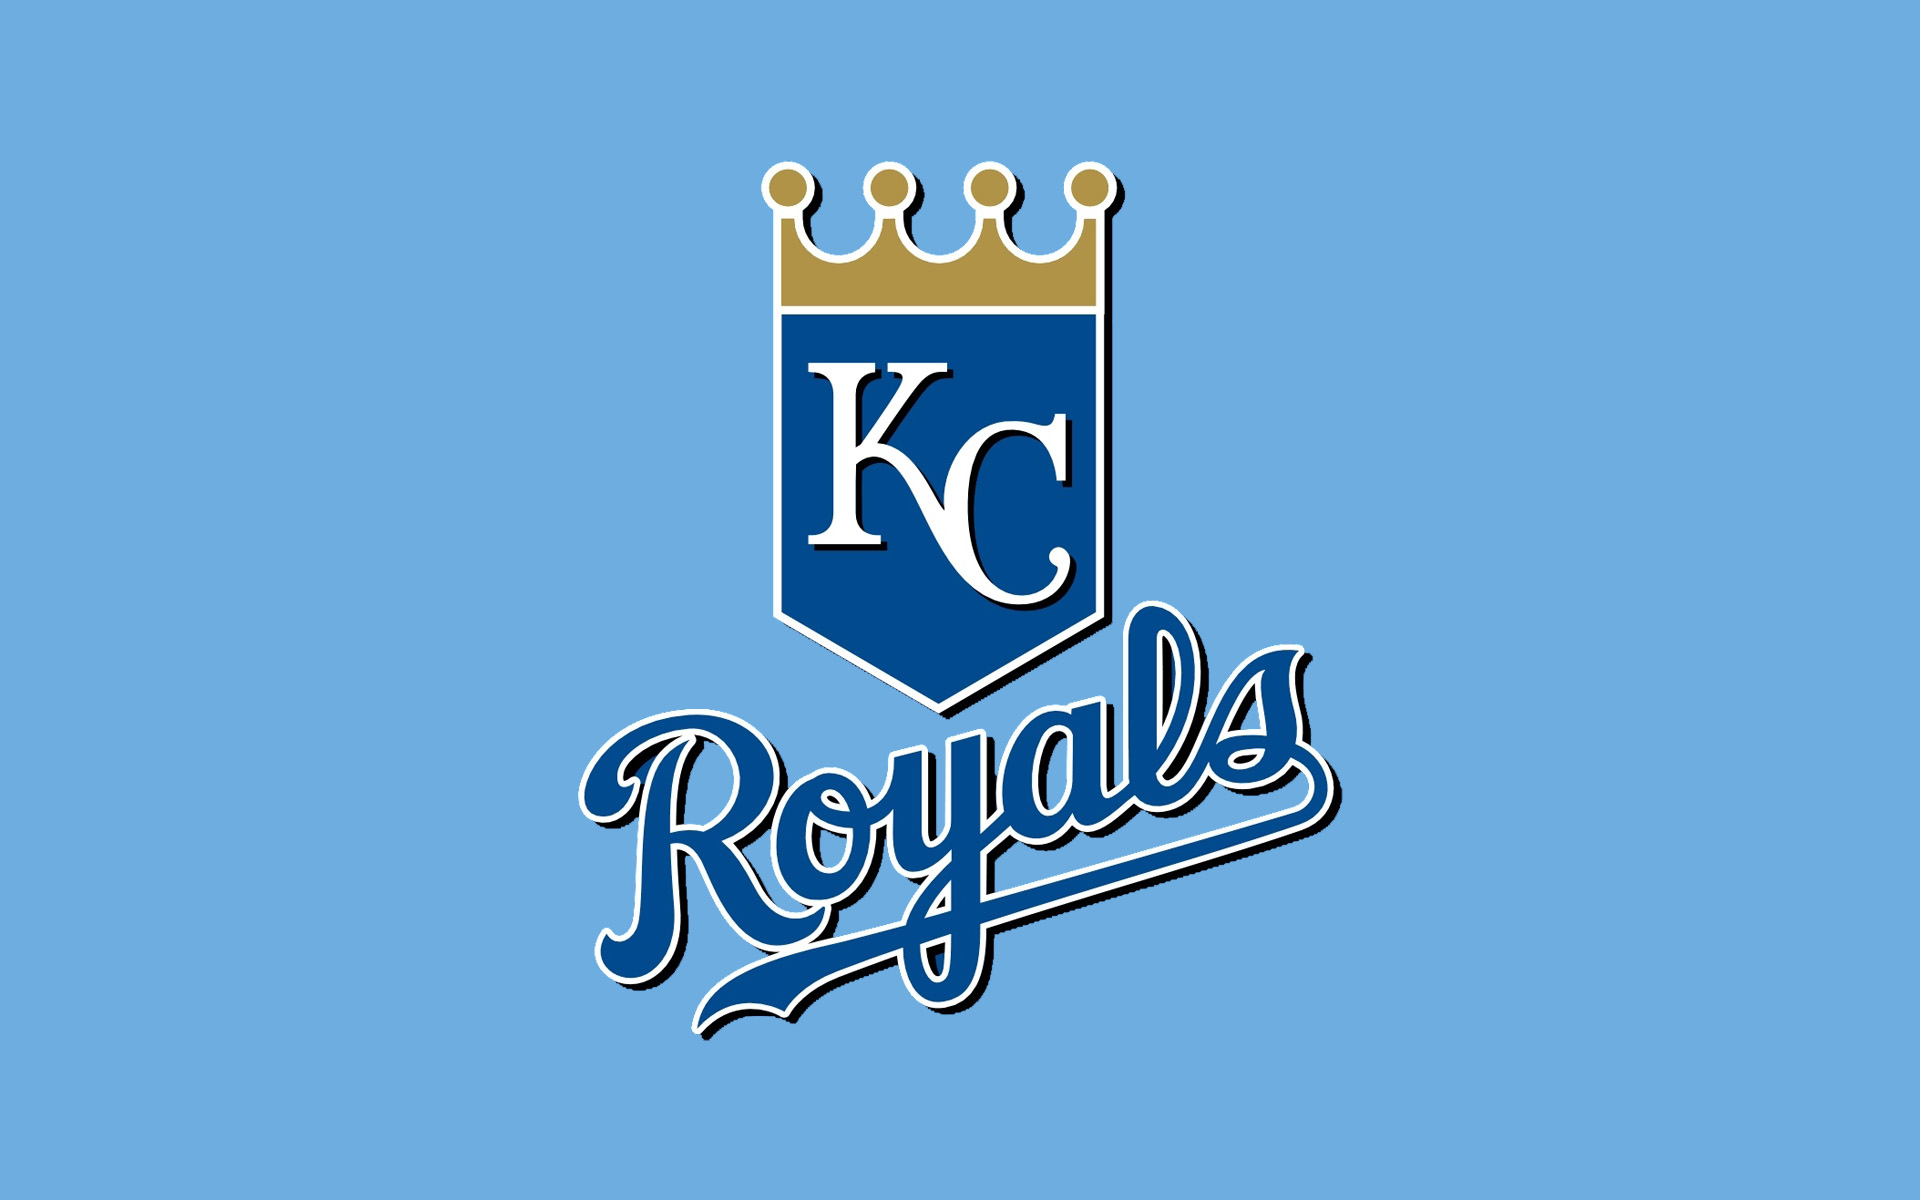 2020 Kansas City Royals Predictions | MLB Betting Season Preview & Odds